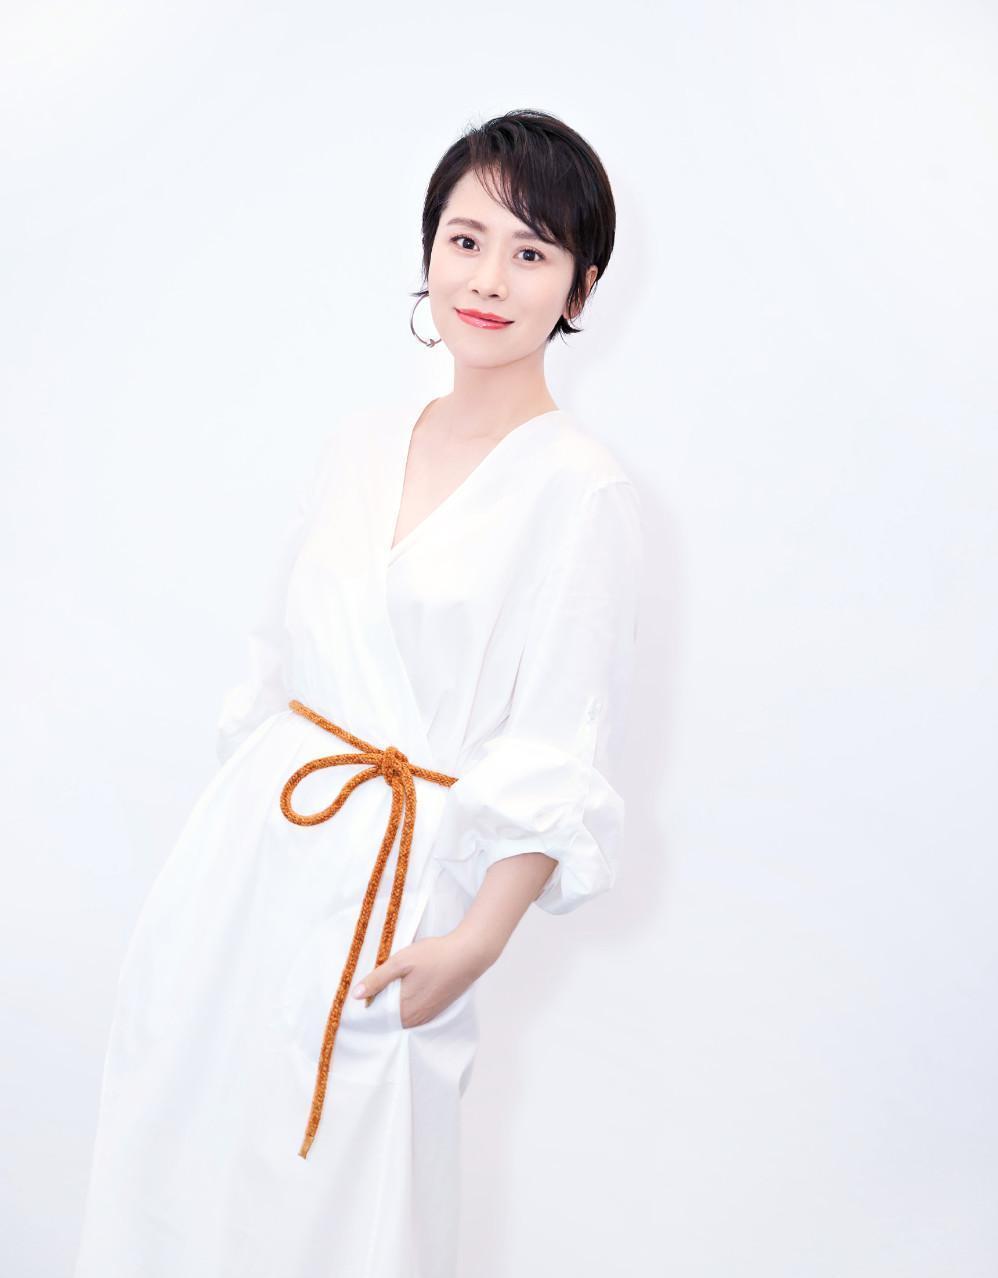 海清出席活动,连衣裙朴素的像白床单,系一根尼龙绳莫名时尚!